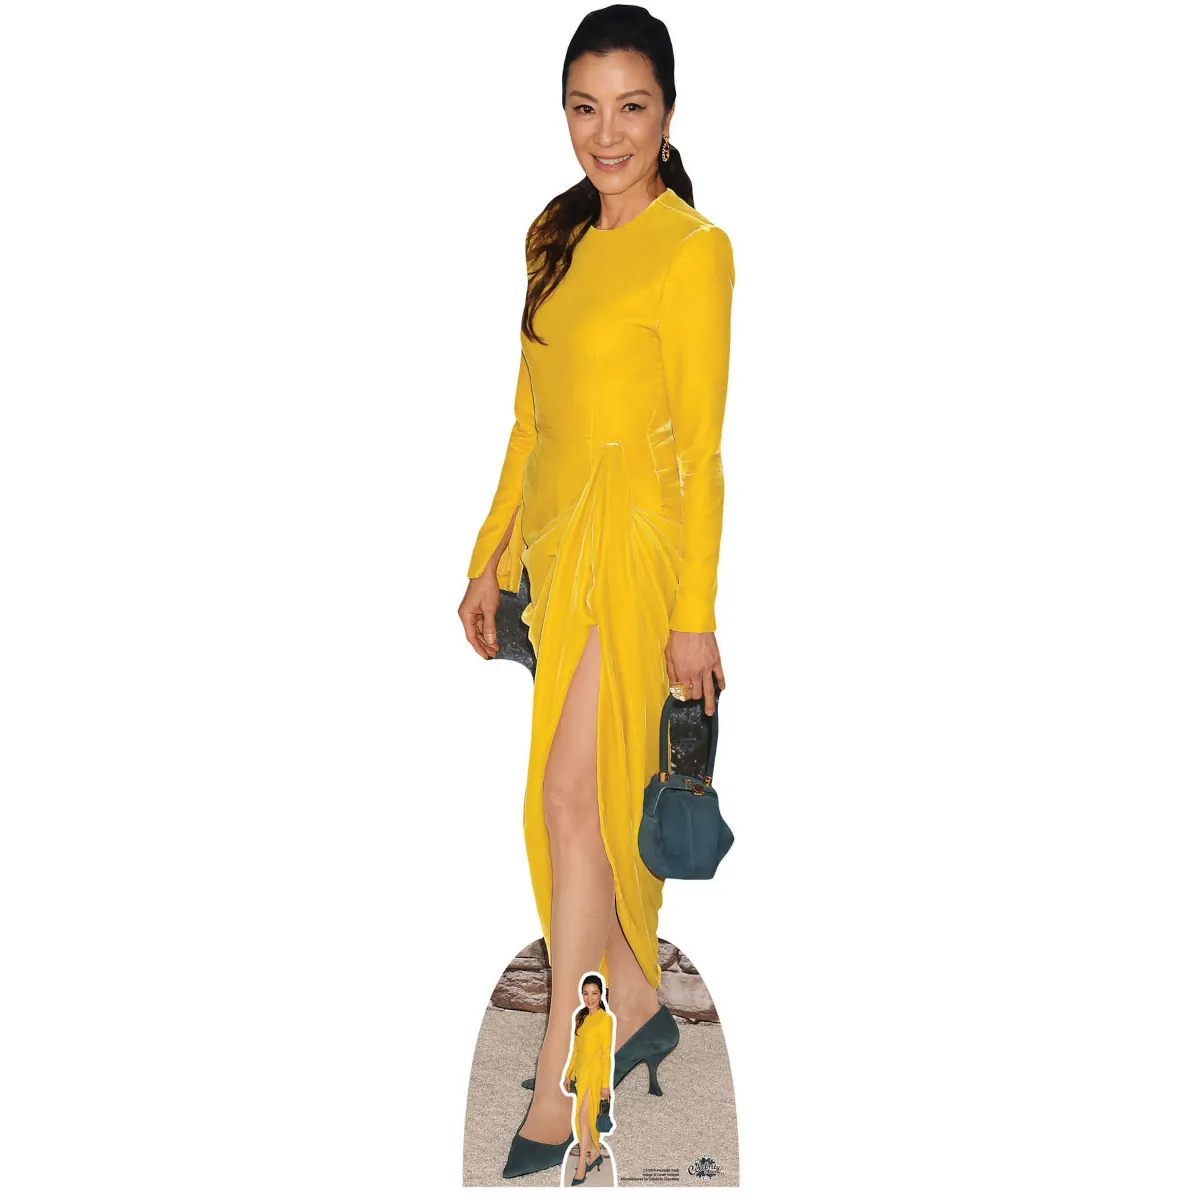 CS1079 Michelle Yeoh 'Yellow Dress' (Malaysian Actress) Lifesize + Mini Cardboard Cutout Standee Front